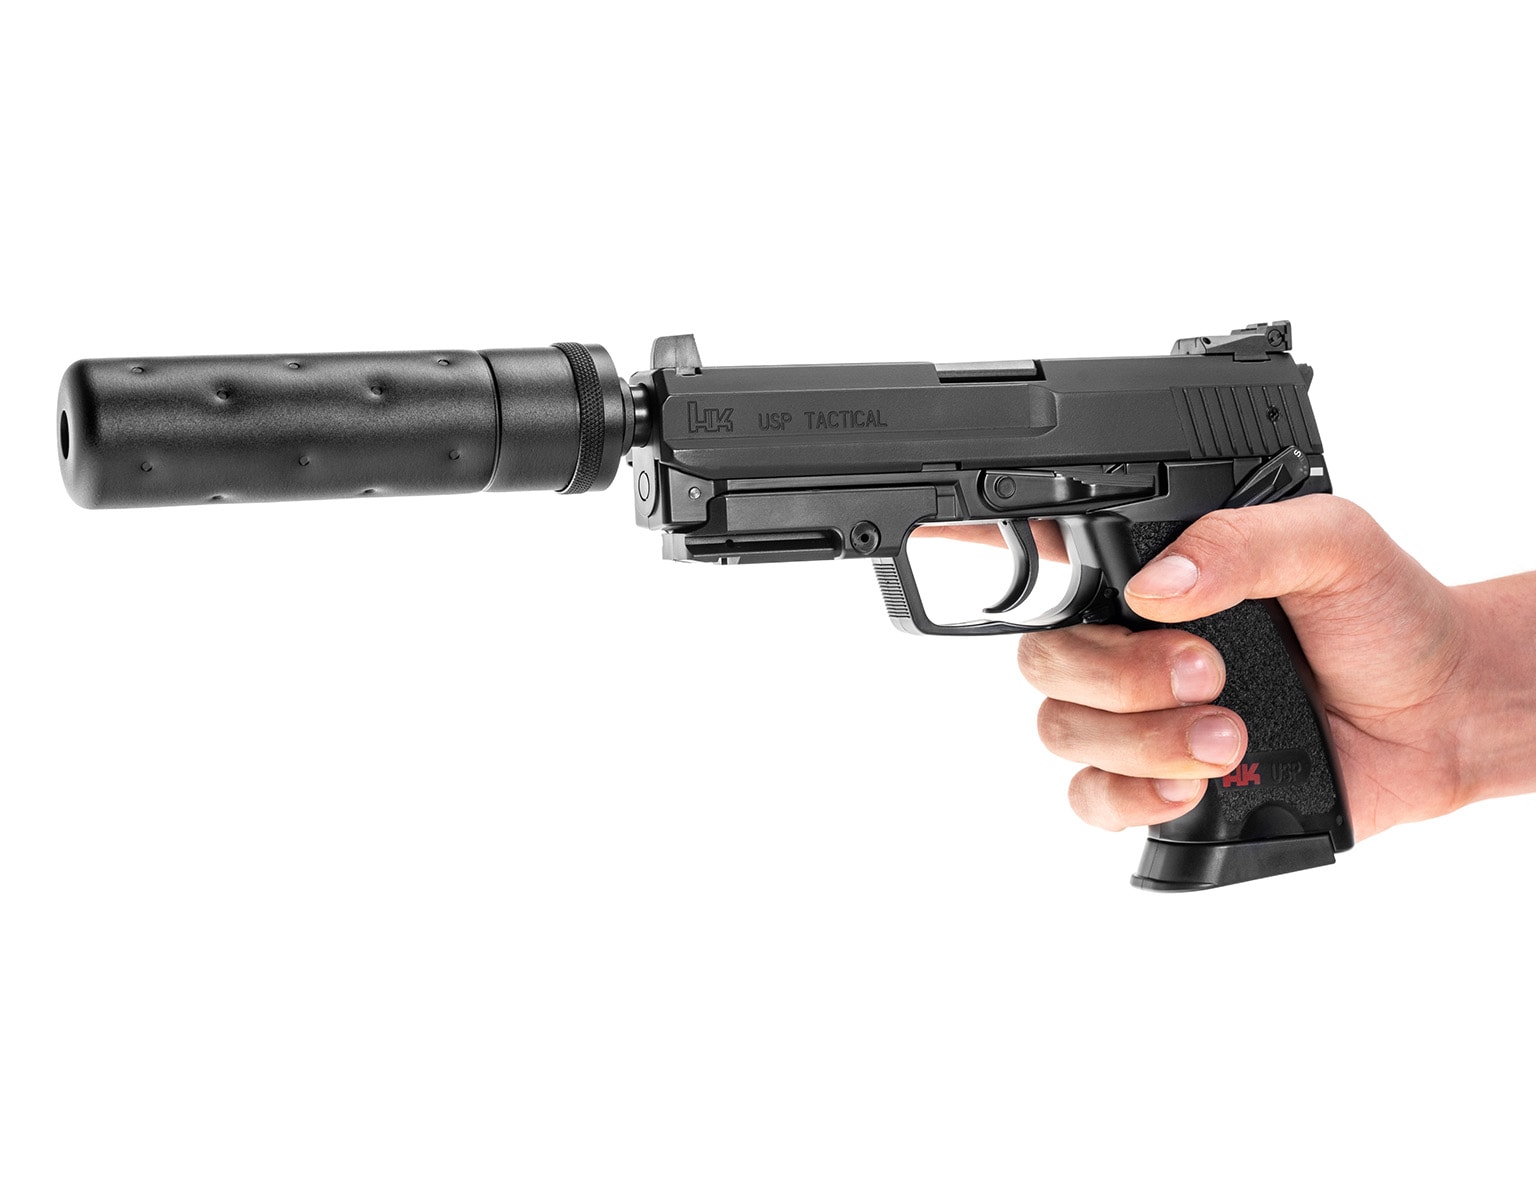 Pistolet AEG Heckler&Koch USP Tactical - czarny